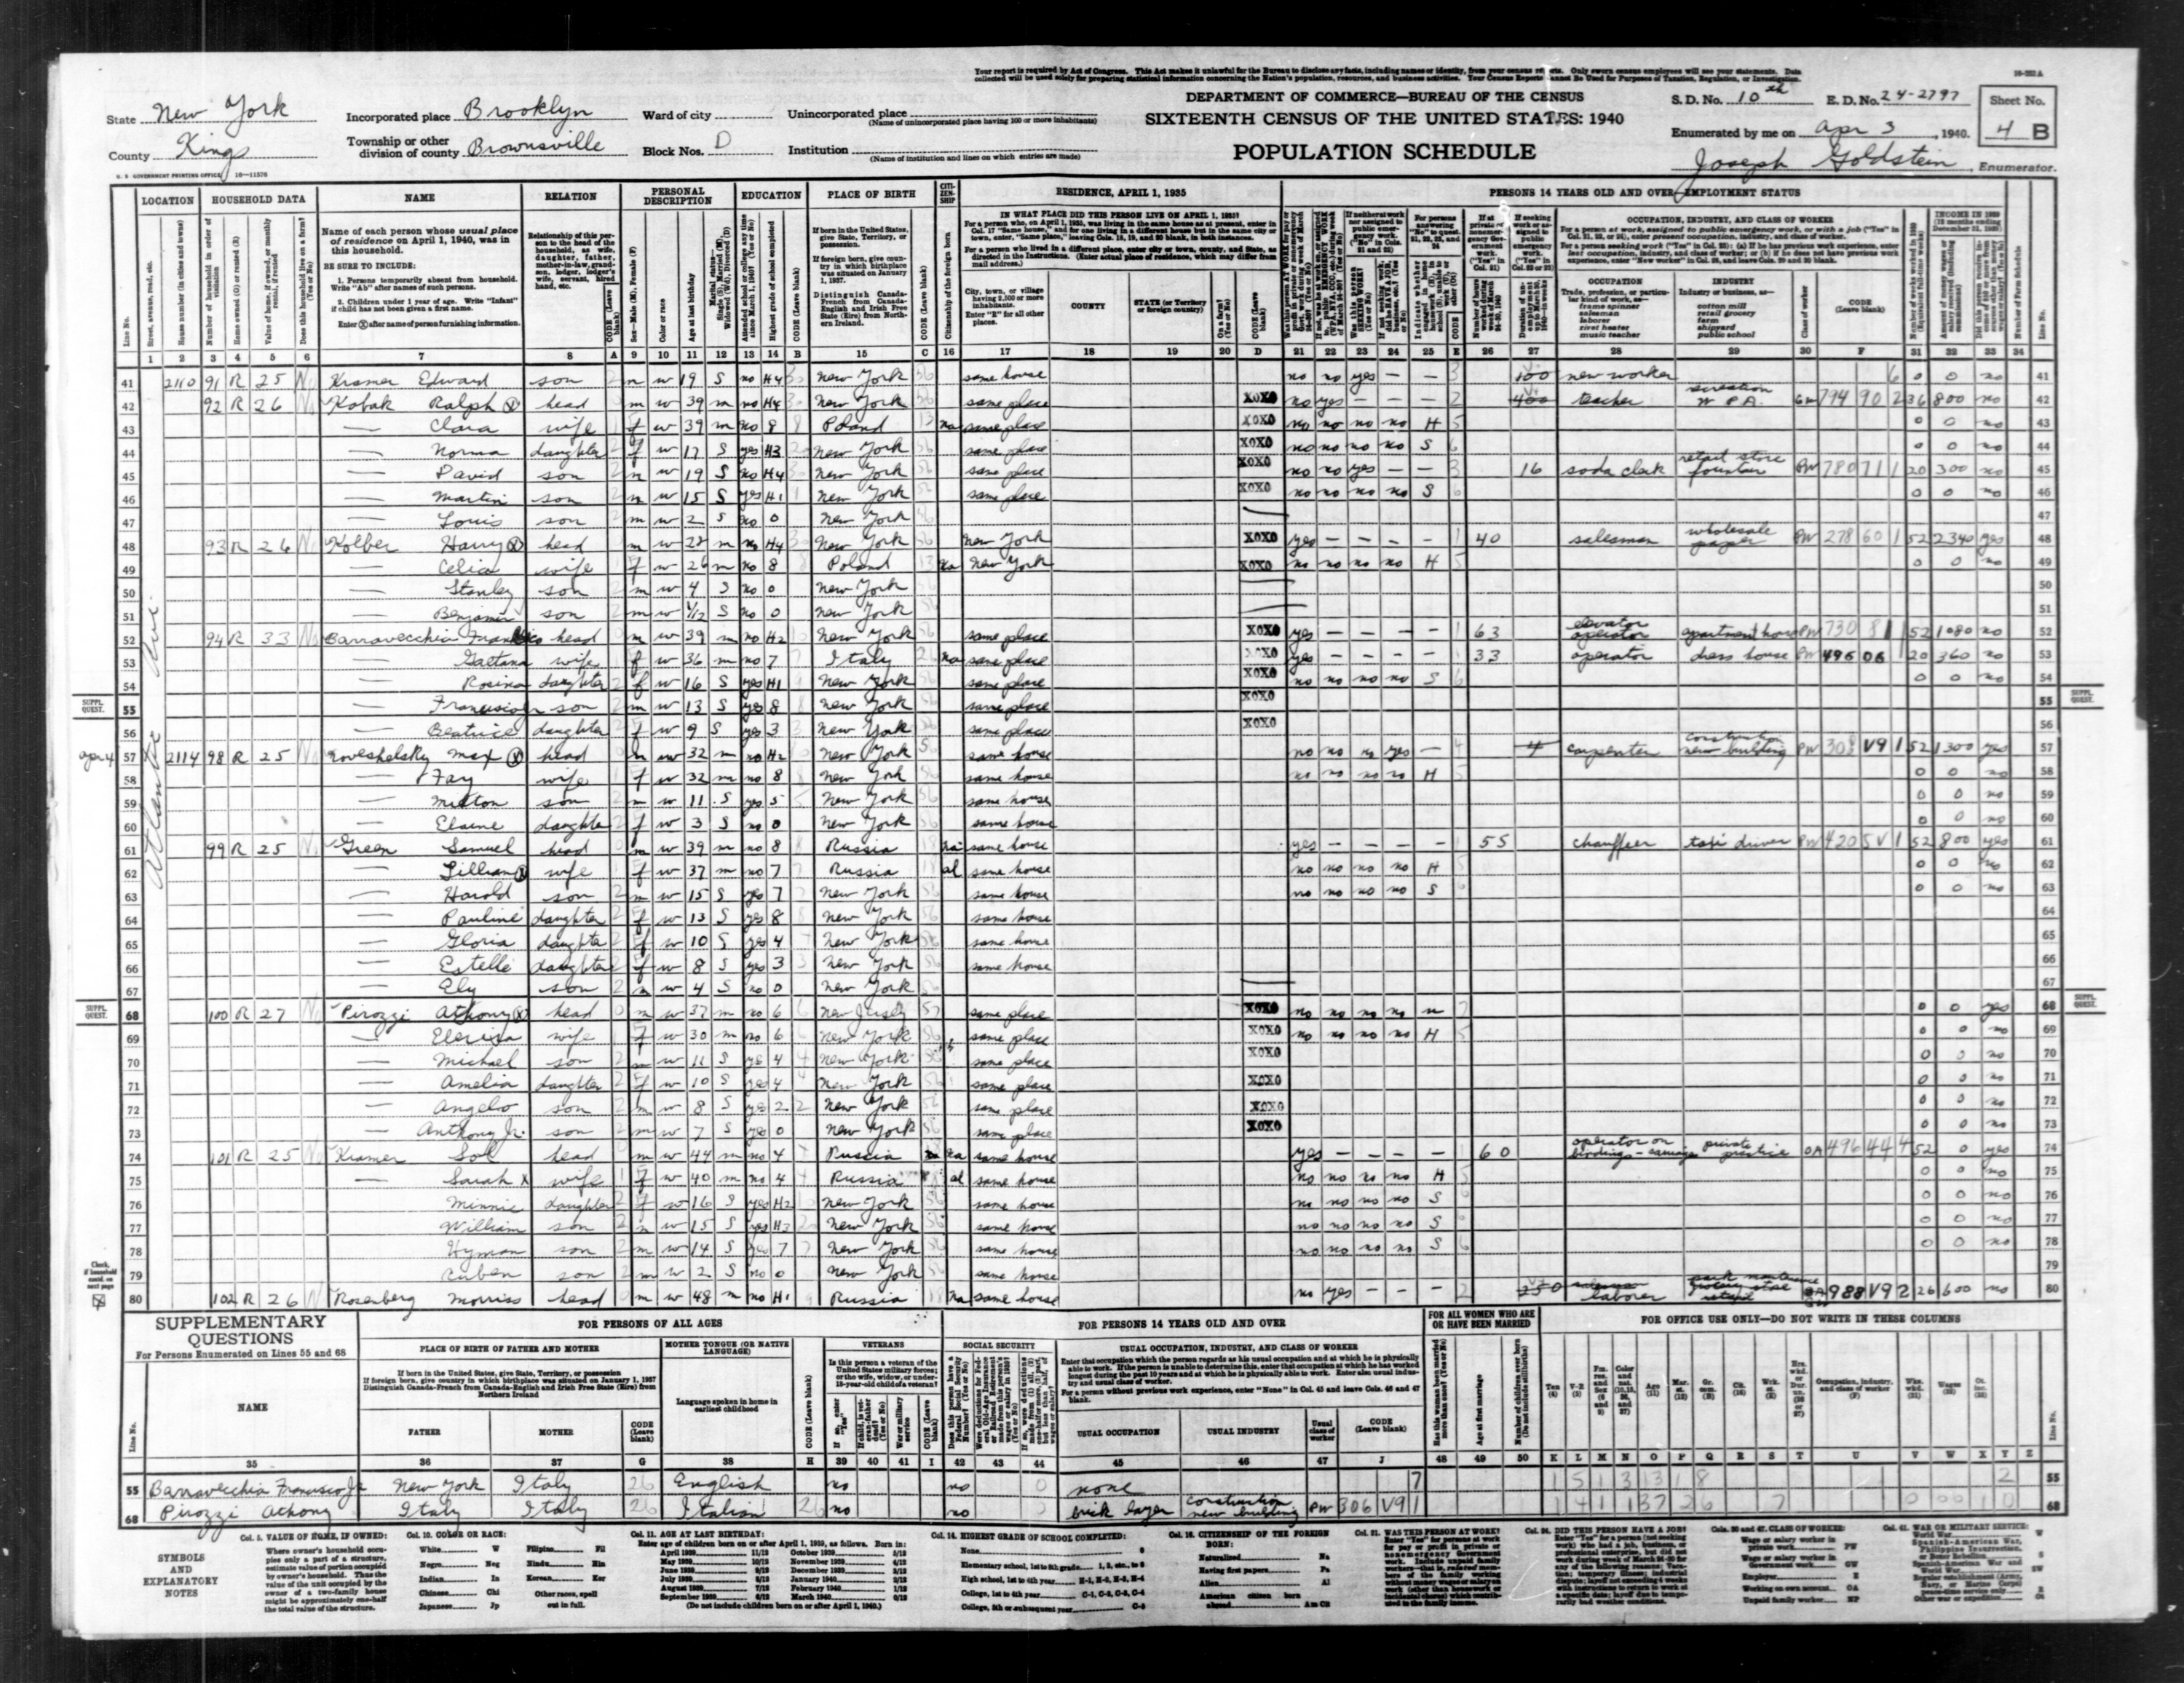 Celia Kolber 1940 Census